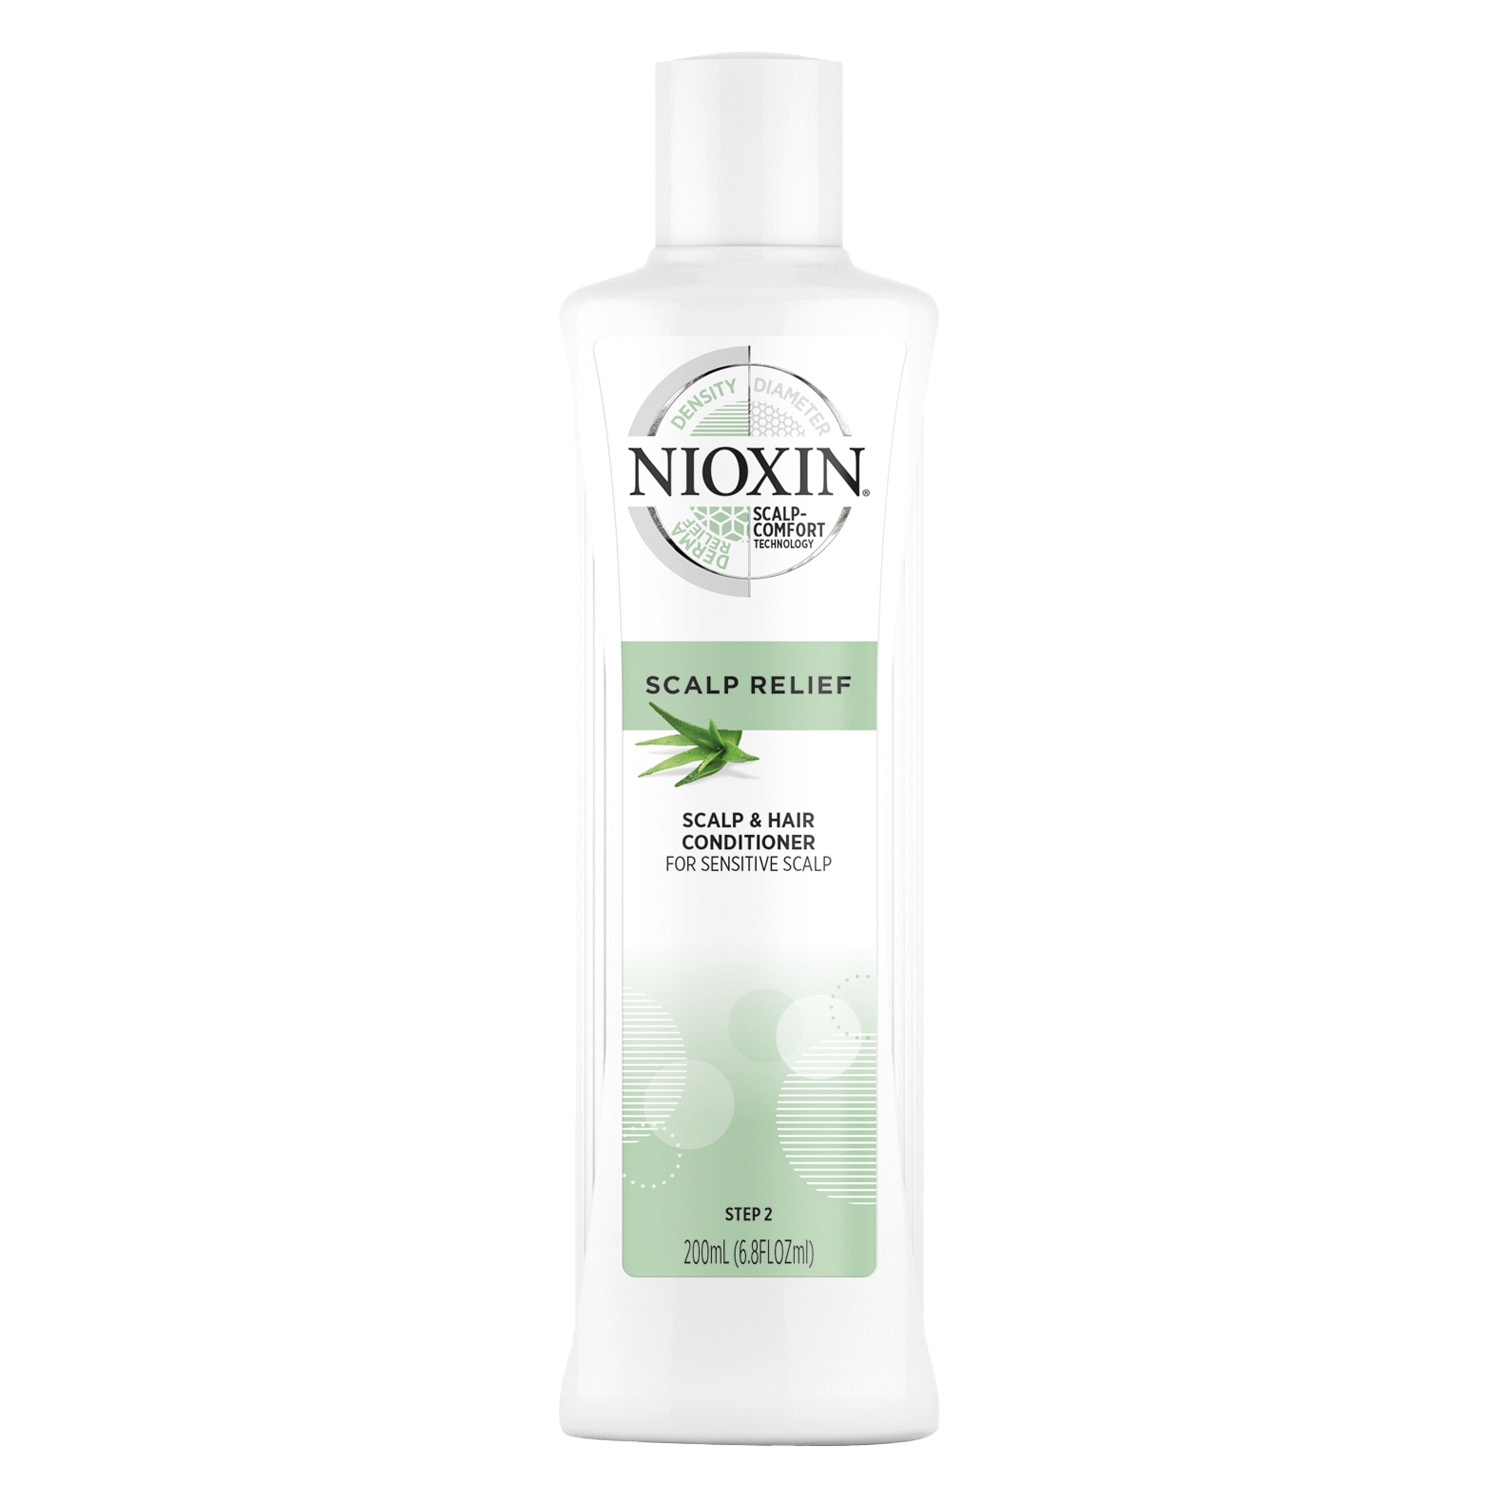 Produktbild von Nioxin - Scalp Relief Conditioner